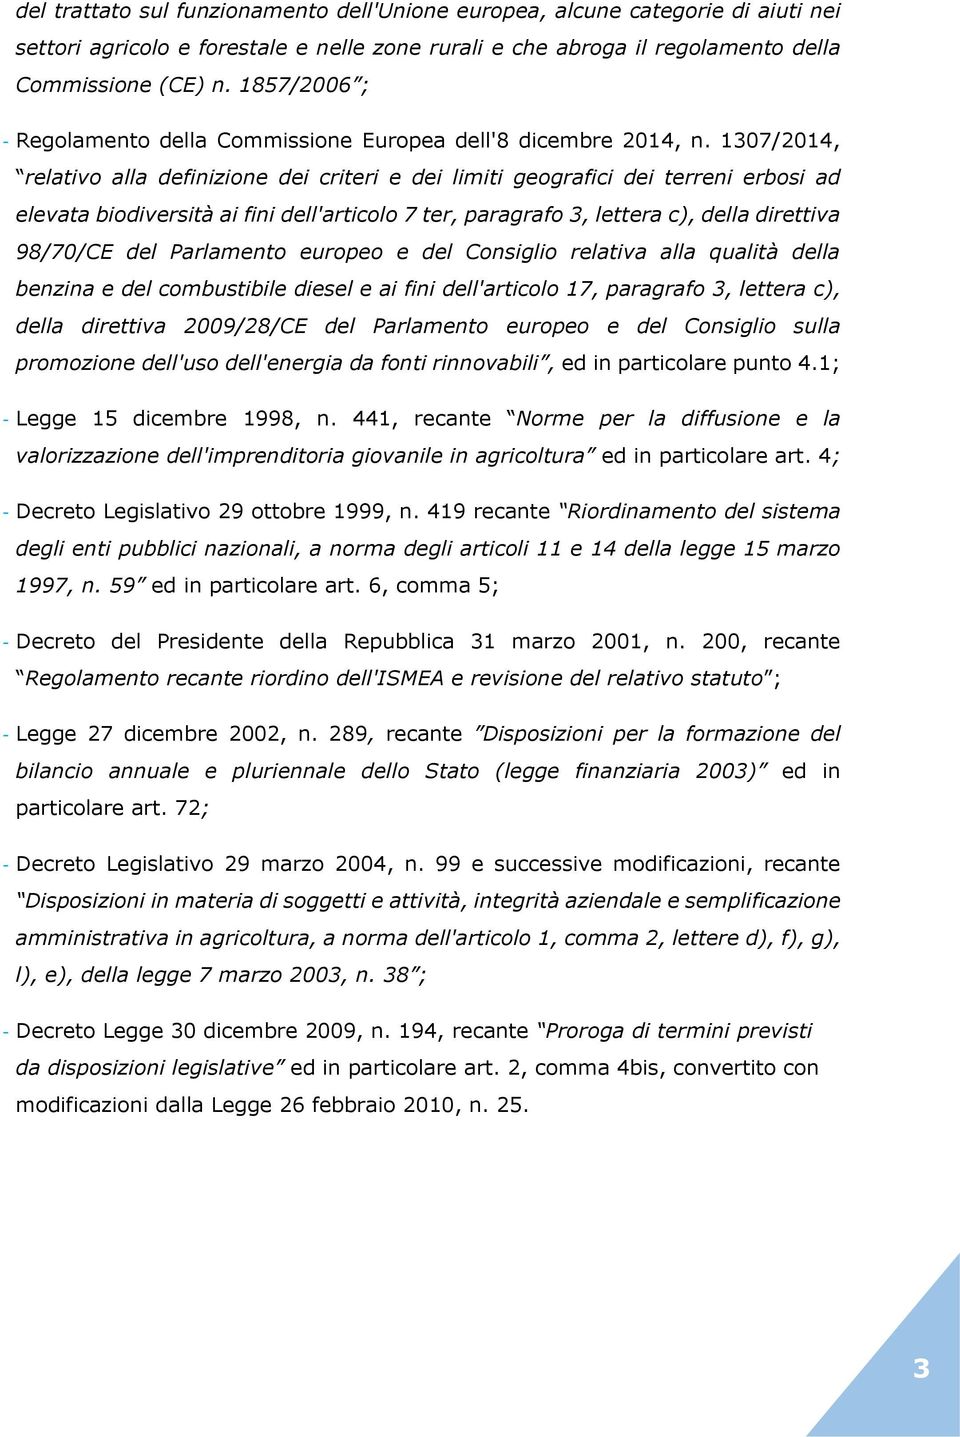 1307/2014, relativo alla definizione dei criteri e dei limiti geografici dei terreni erbosi ad elevata biodiversità ai fini dell'articolo 7 ter, paragrafo 3, lettera c), della direttiva 98/70/CE del